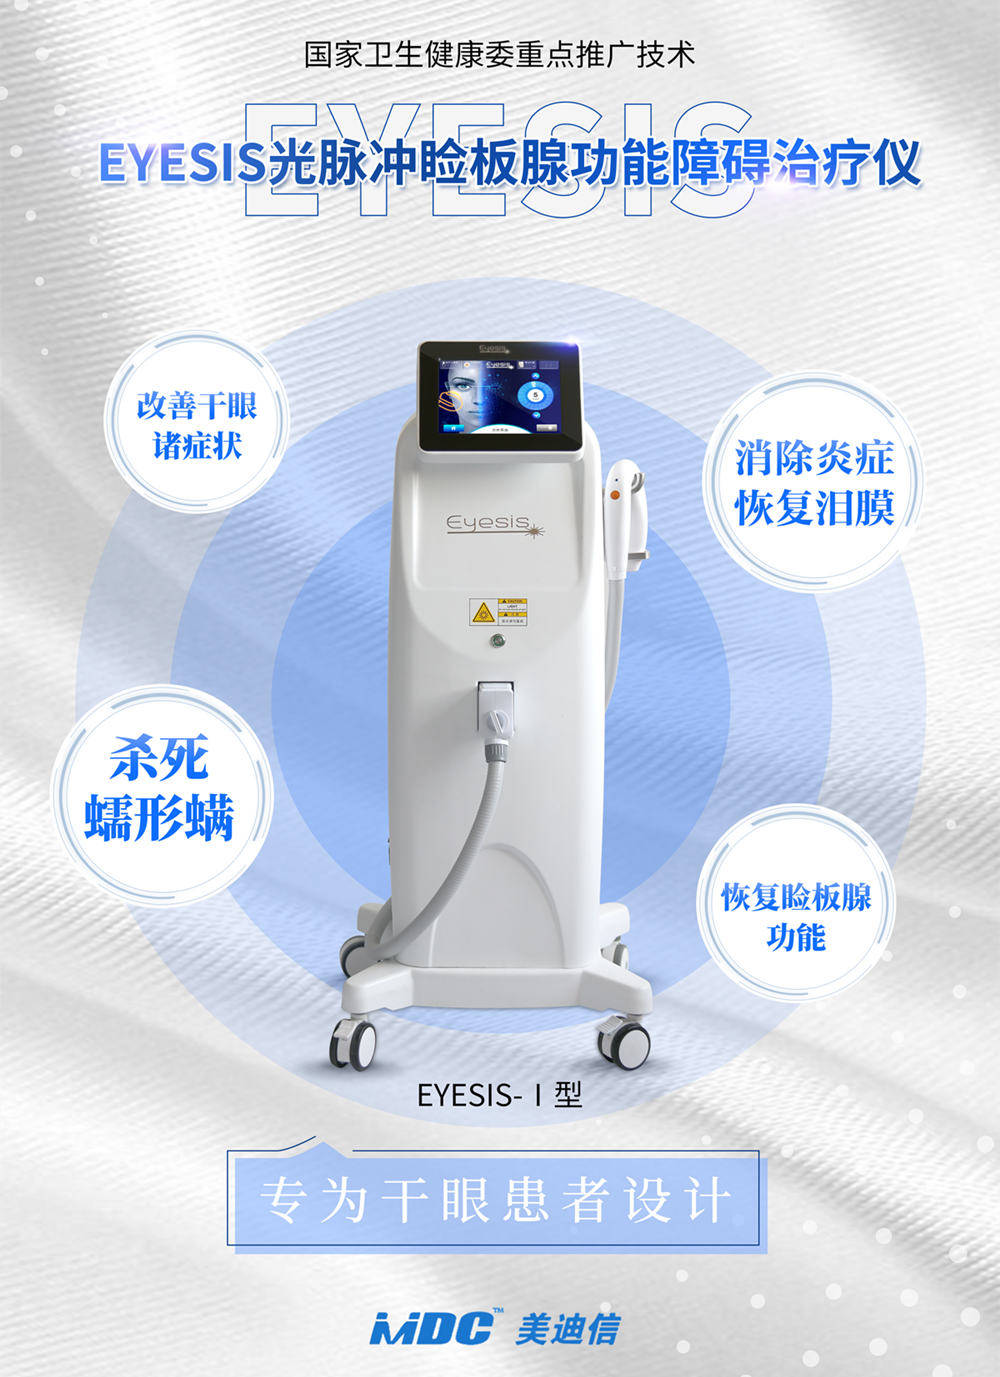 美迪信EYESIS干眼治疗仪是国家健康委重点推广技术